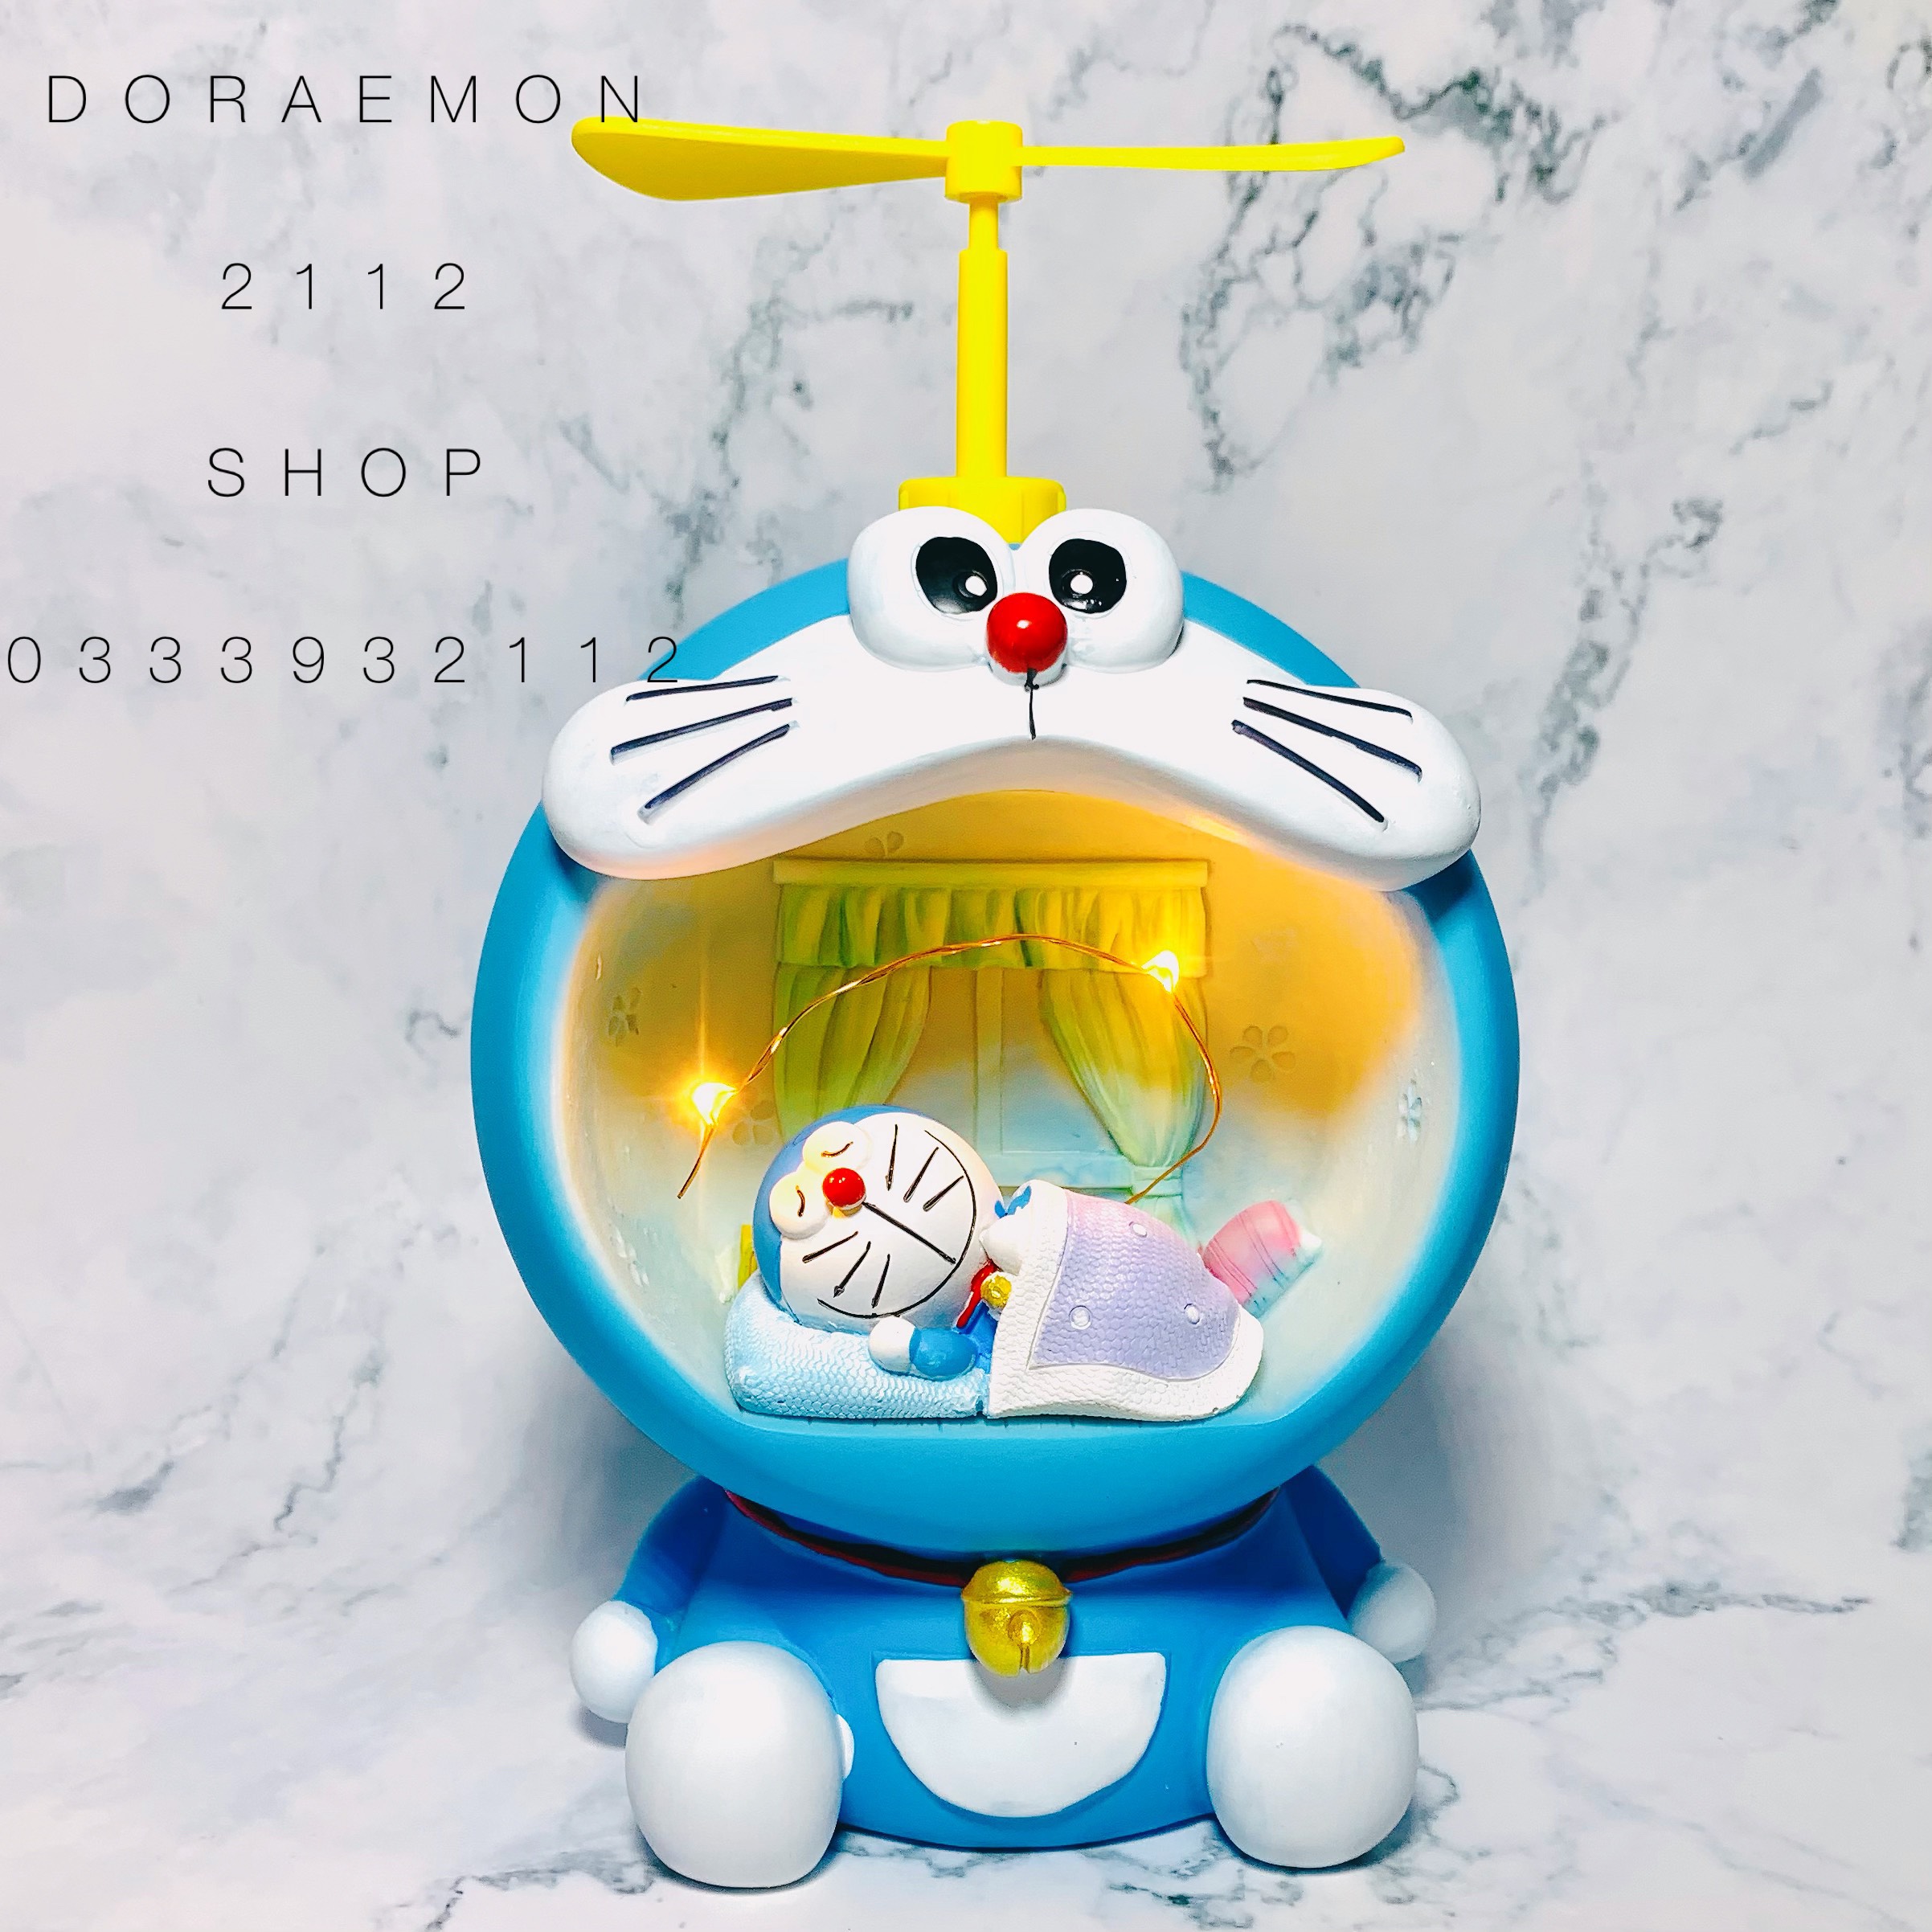 Chinatera 5D Tự Làm Bức Tranh Kim Cương Phim Hoạt Hình Doraemon Màu Xanh  Dương Robot Mèo Hoạt Hình Tranh Kim Cương Giả Tròn Toàn Bộ Khoan Nhựa Khảm  Trang Trí Nội